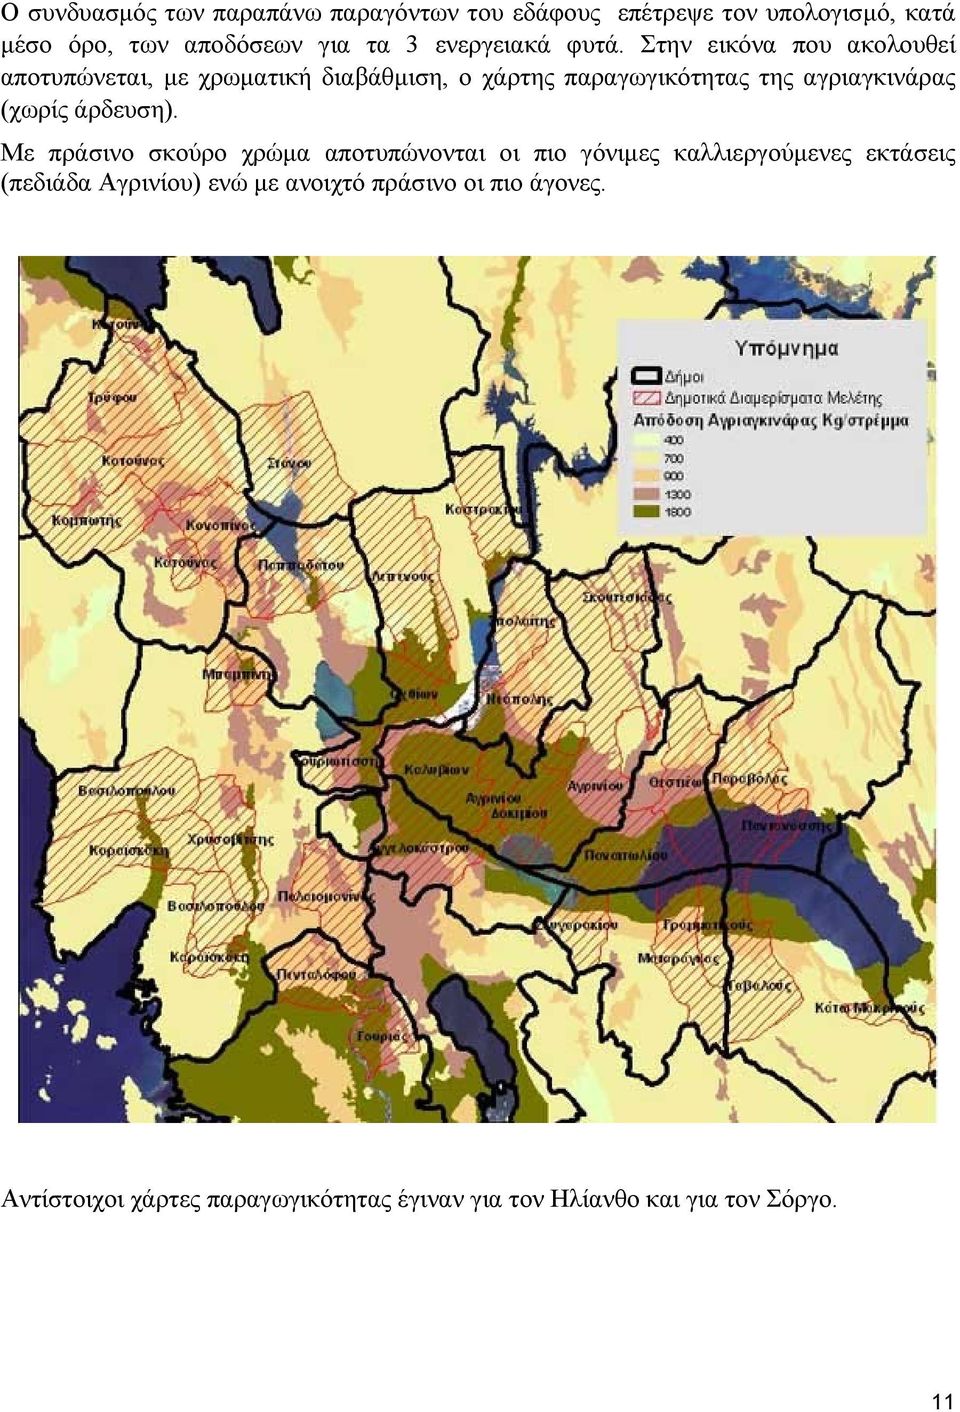 Στην εικόνα που ακολουθεί αποτυπώνεται, με χρωματική διαβάθμιση, ο χάρτης παραγωγικότητας της αγριαγκινάρας (χωρίς